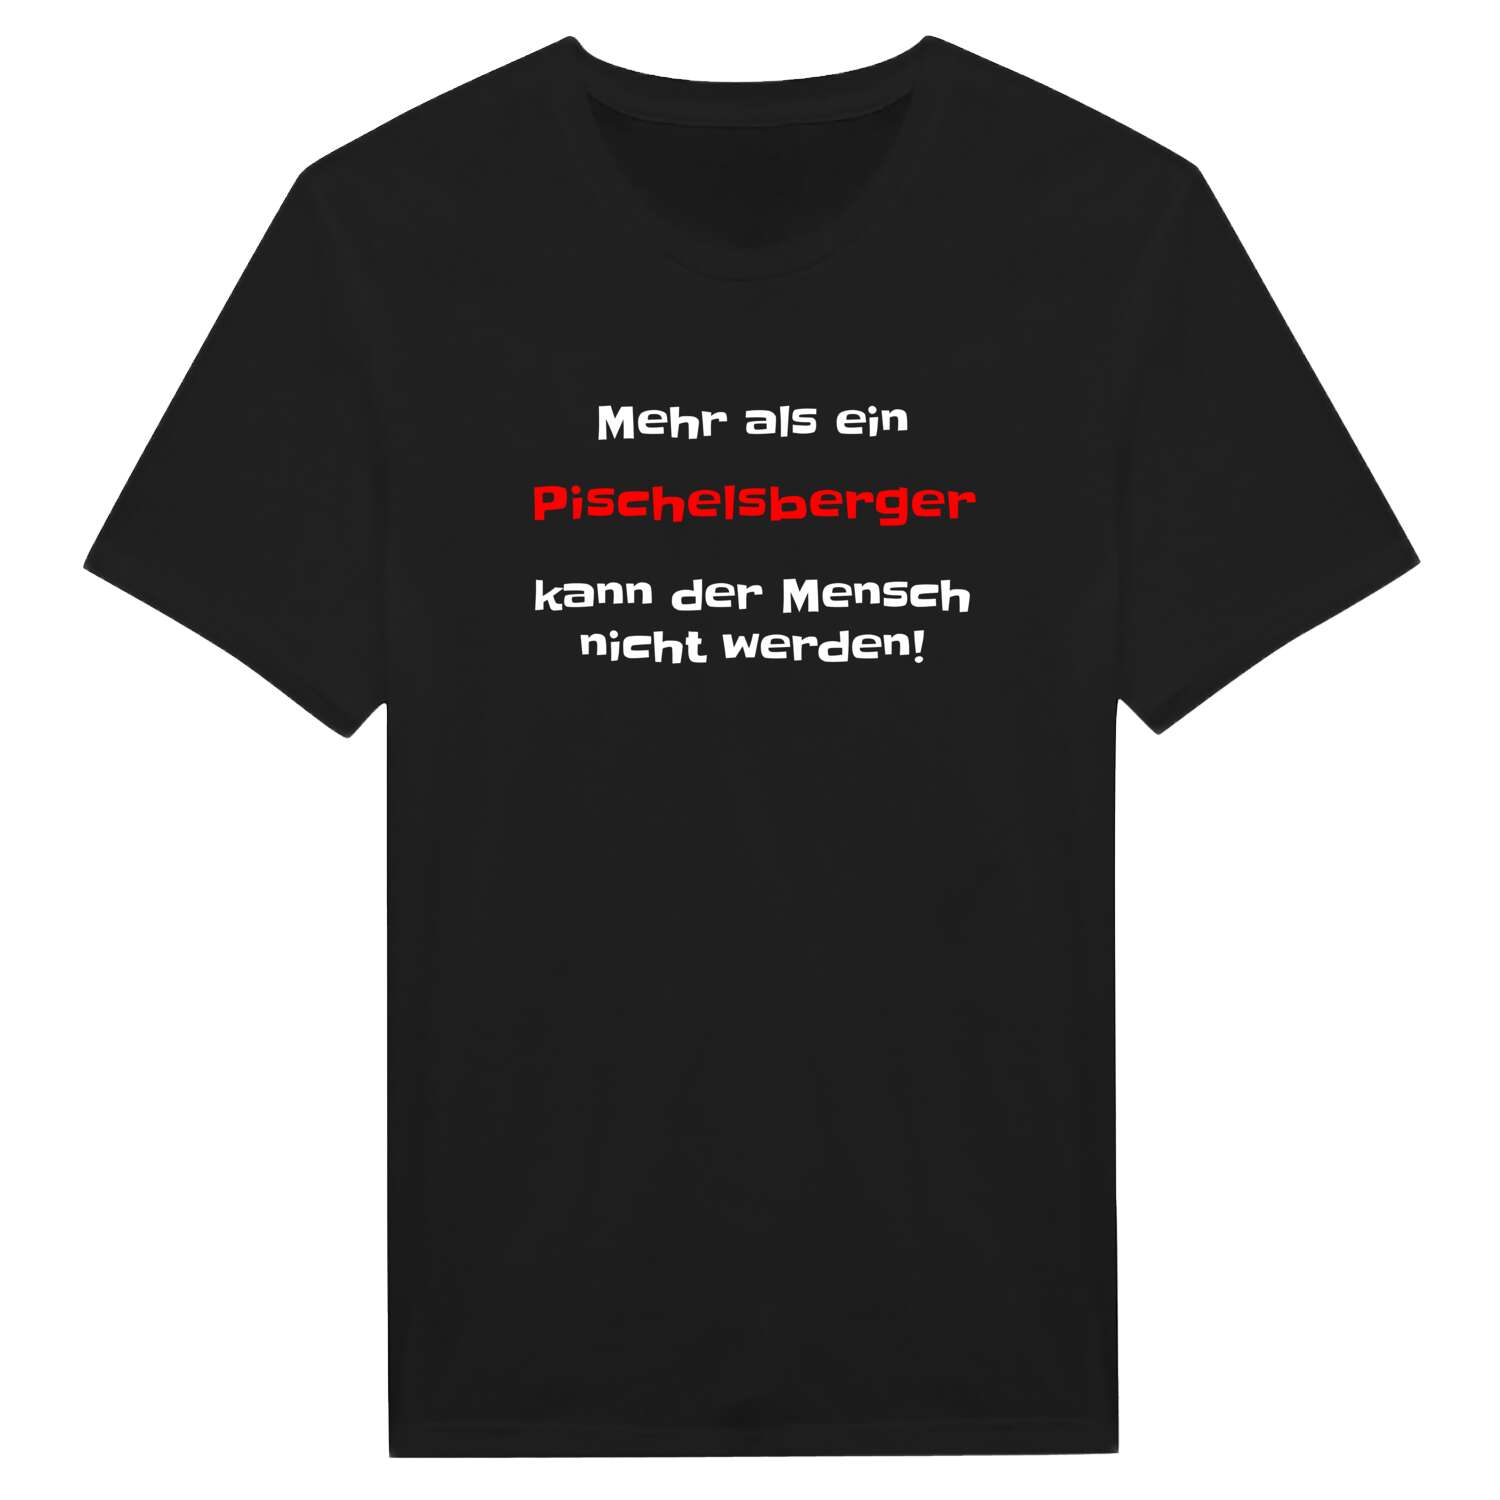 Pischelsberg T-Shirt »Mehr als ein«